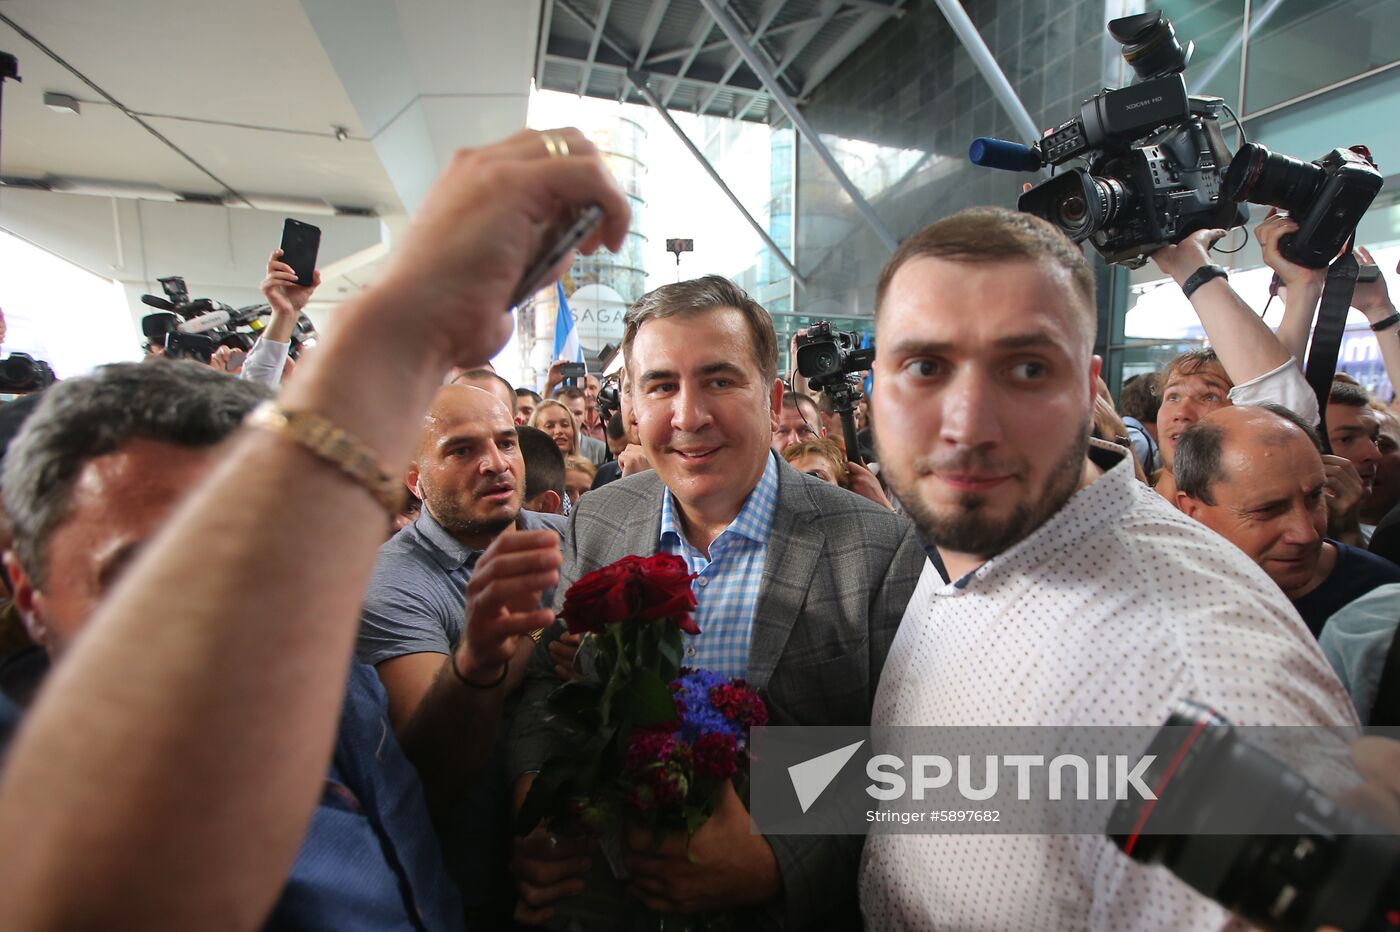 Ukraine Saakashvili Return